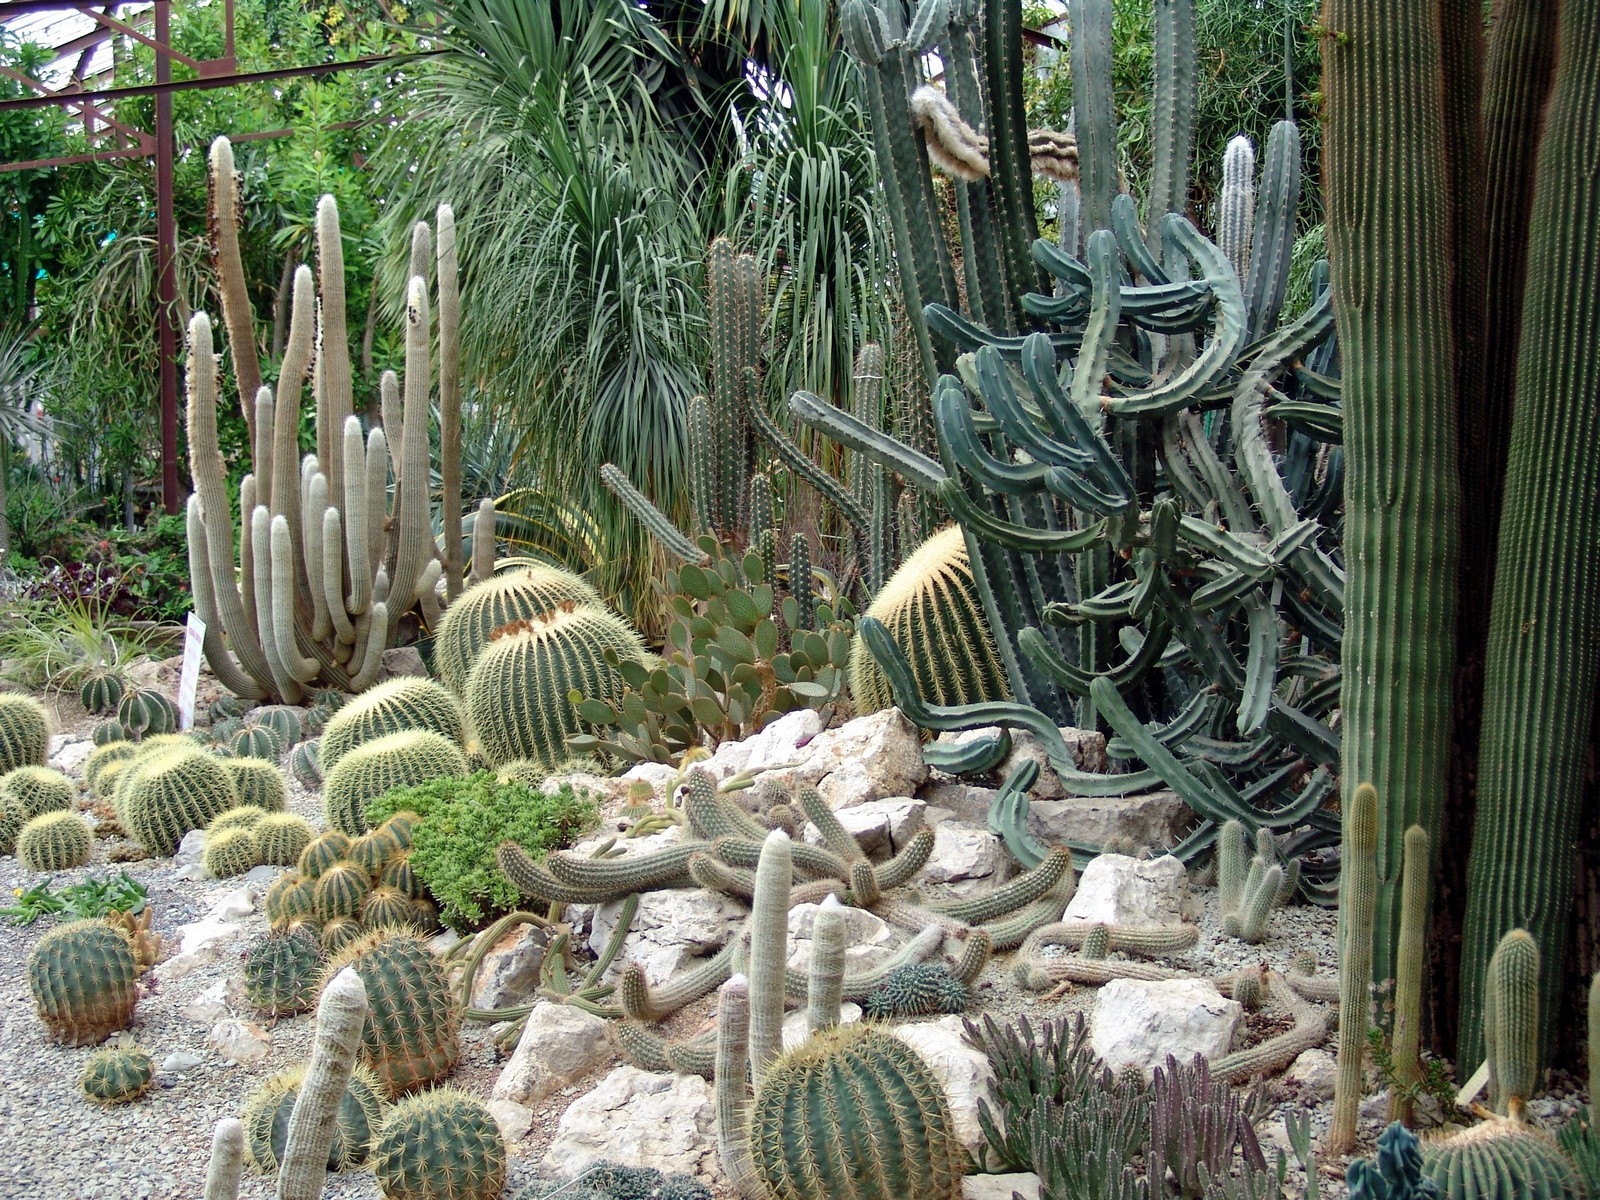 Никитский ботанический сад.